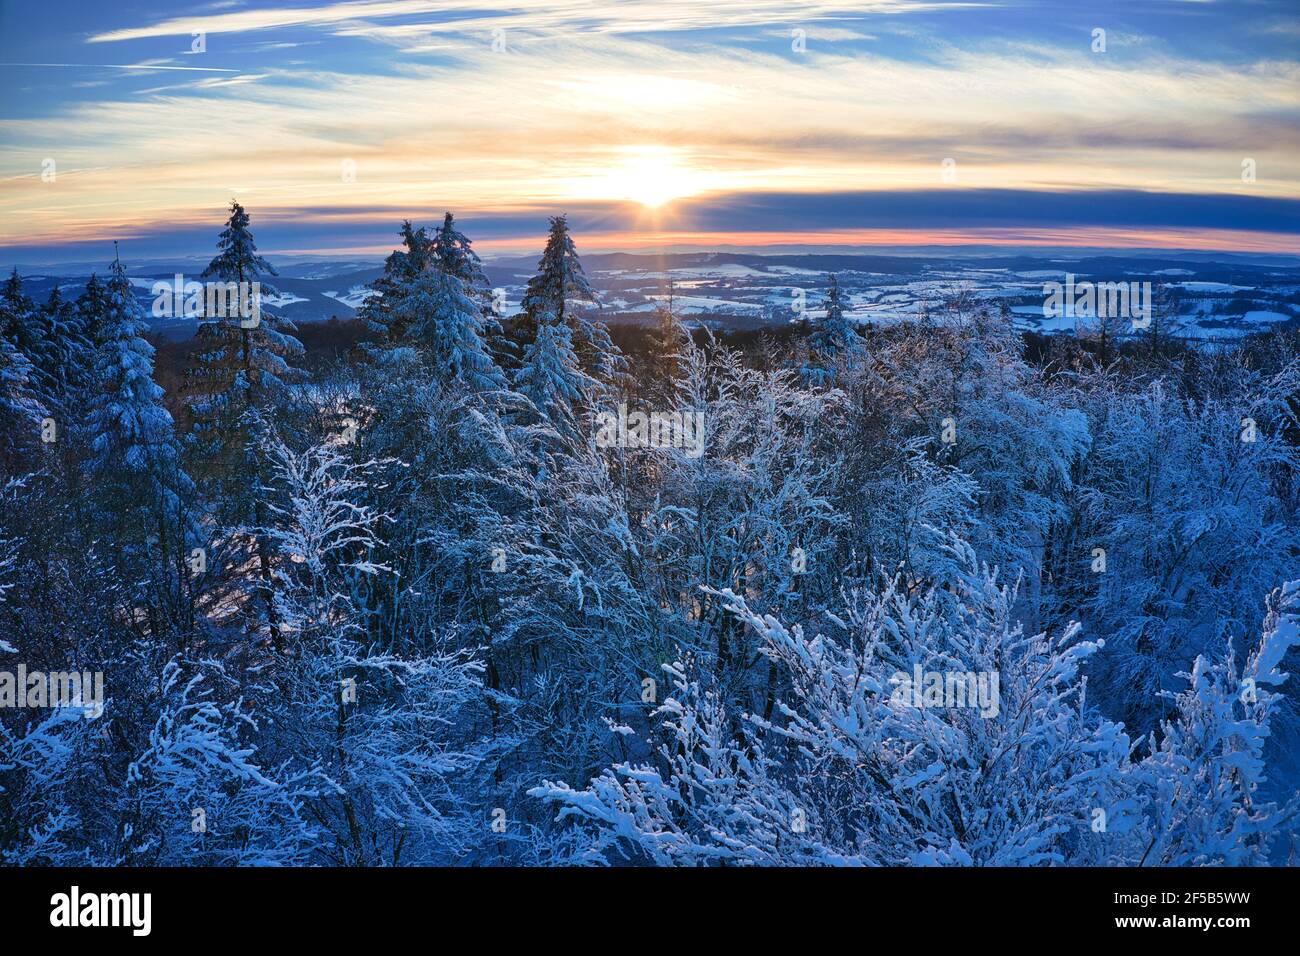 Luftaufnahme vom winterlichen Sonnenuntergang auf dem Hohen Meißner Foto de stock